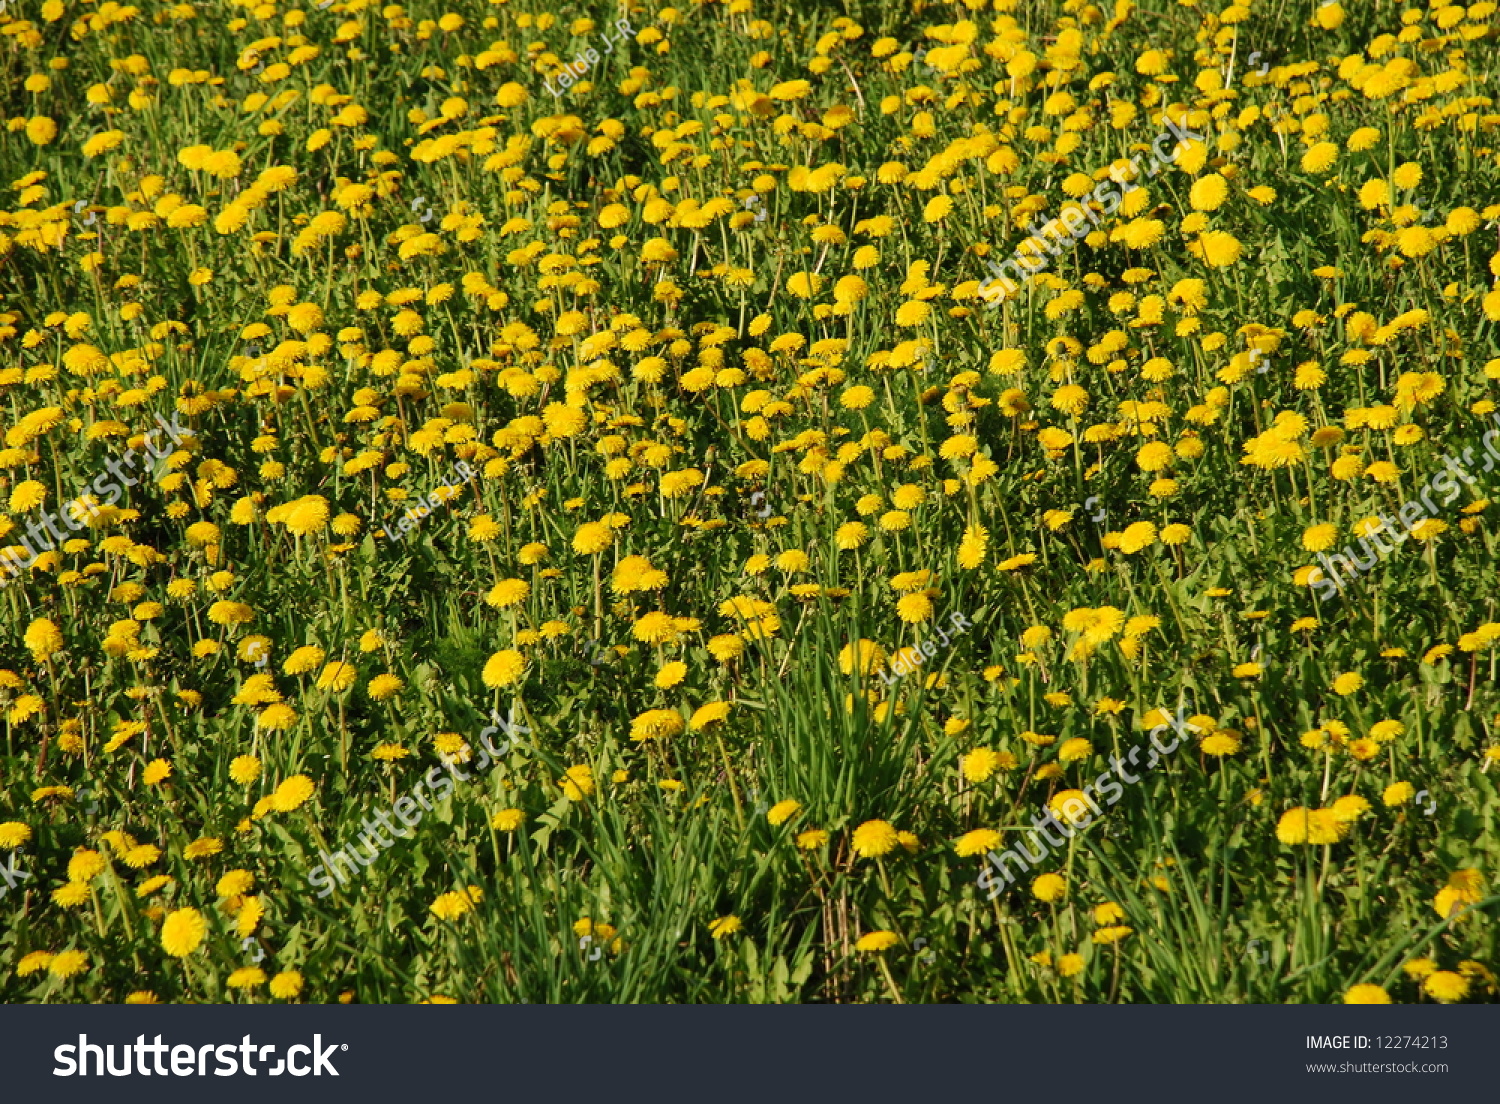 Beautiful Dandelions Field, A Field Full Of Dandelion`S In Summer Stock ...